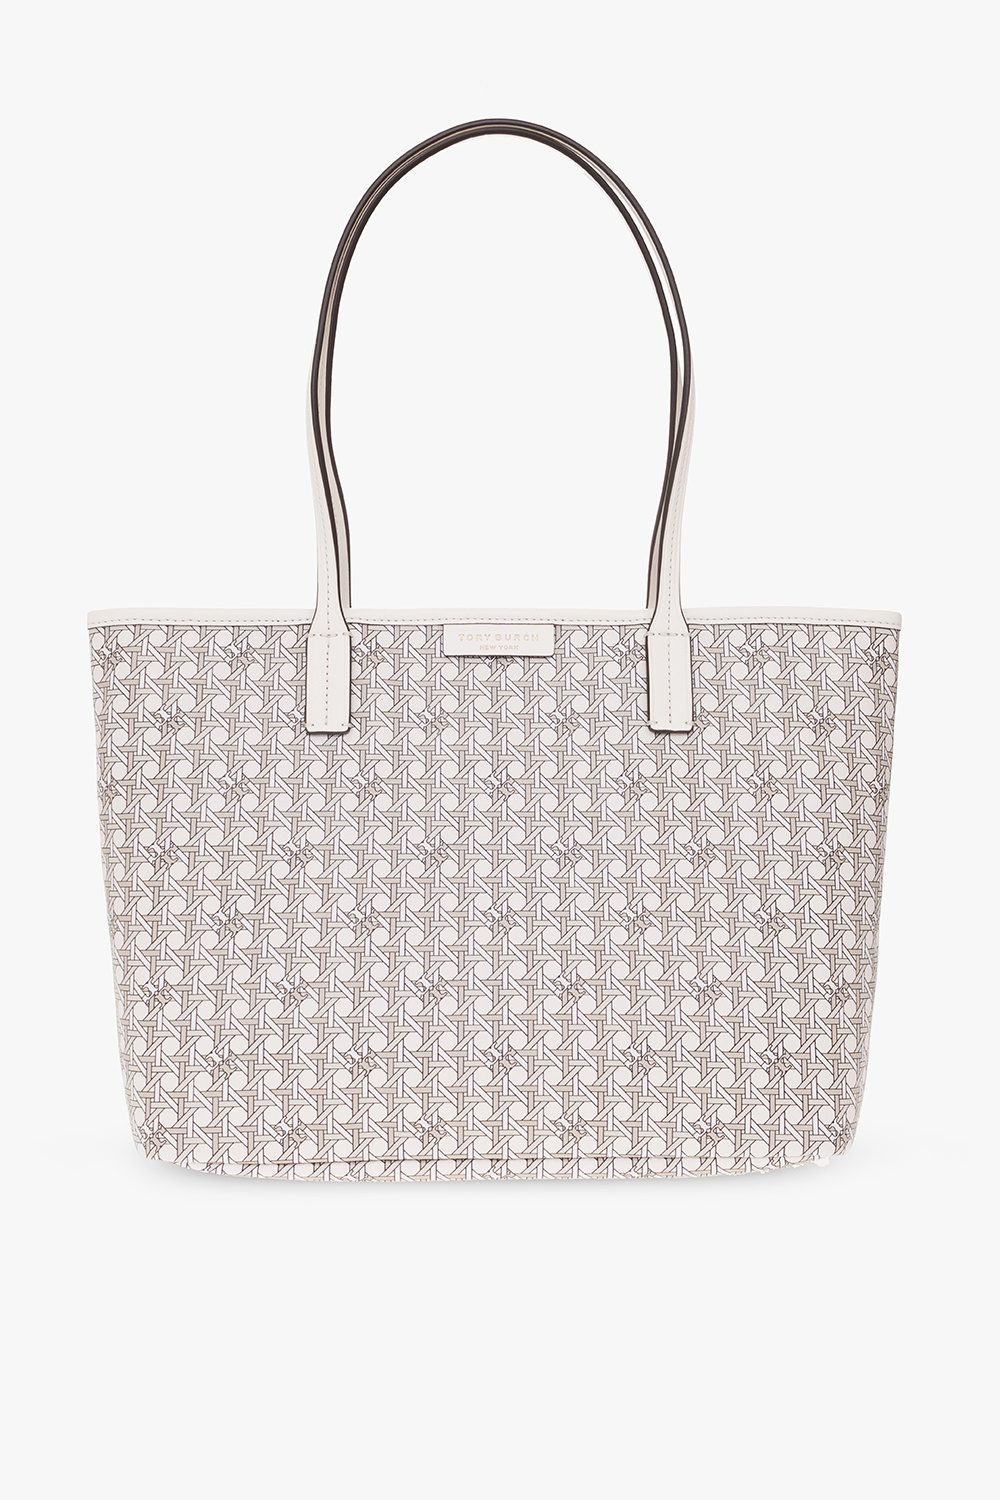 104 Shoppers Louis Vuitton Shopping Bag Stock Photos - Free